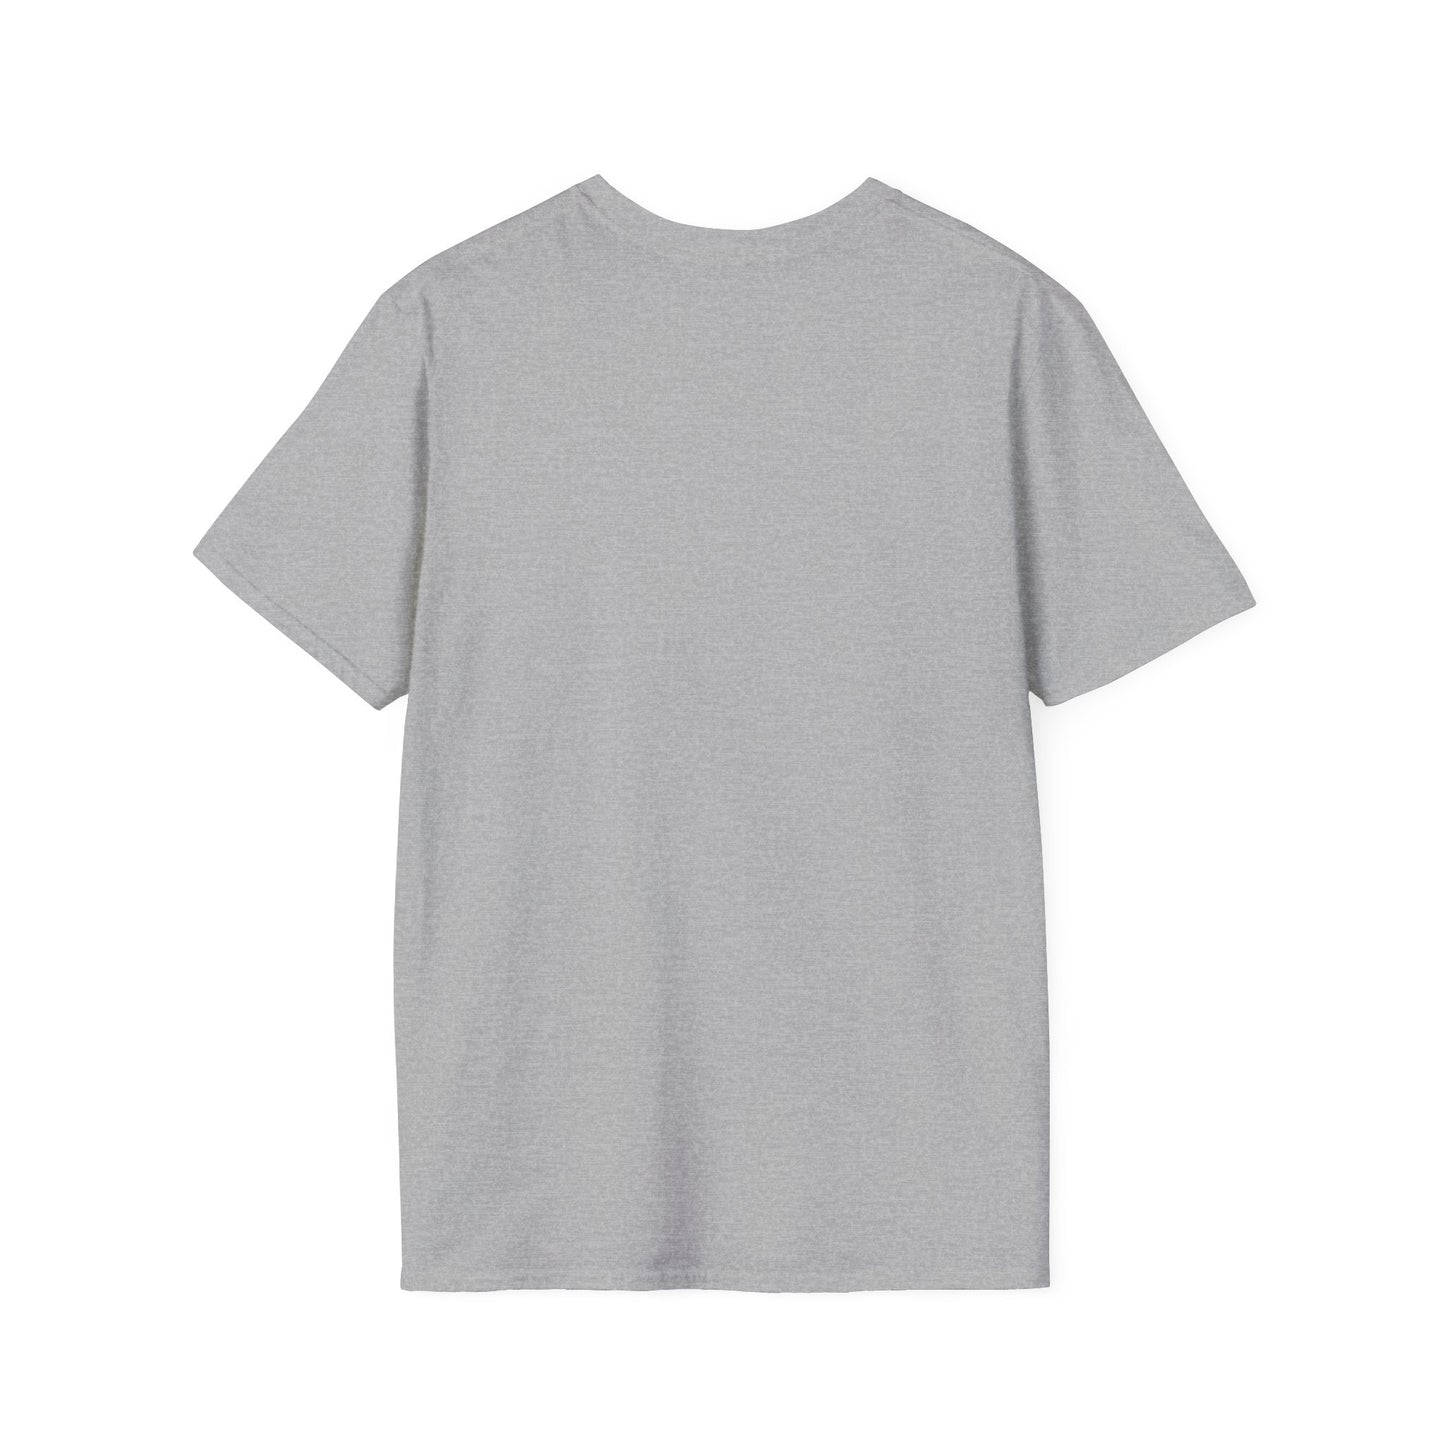 TG-23 Unisex Softstyle T-Shirt